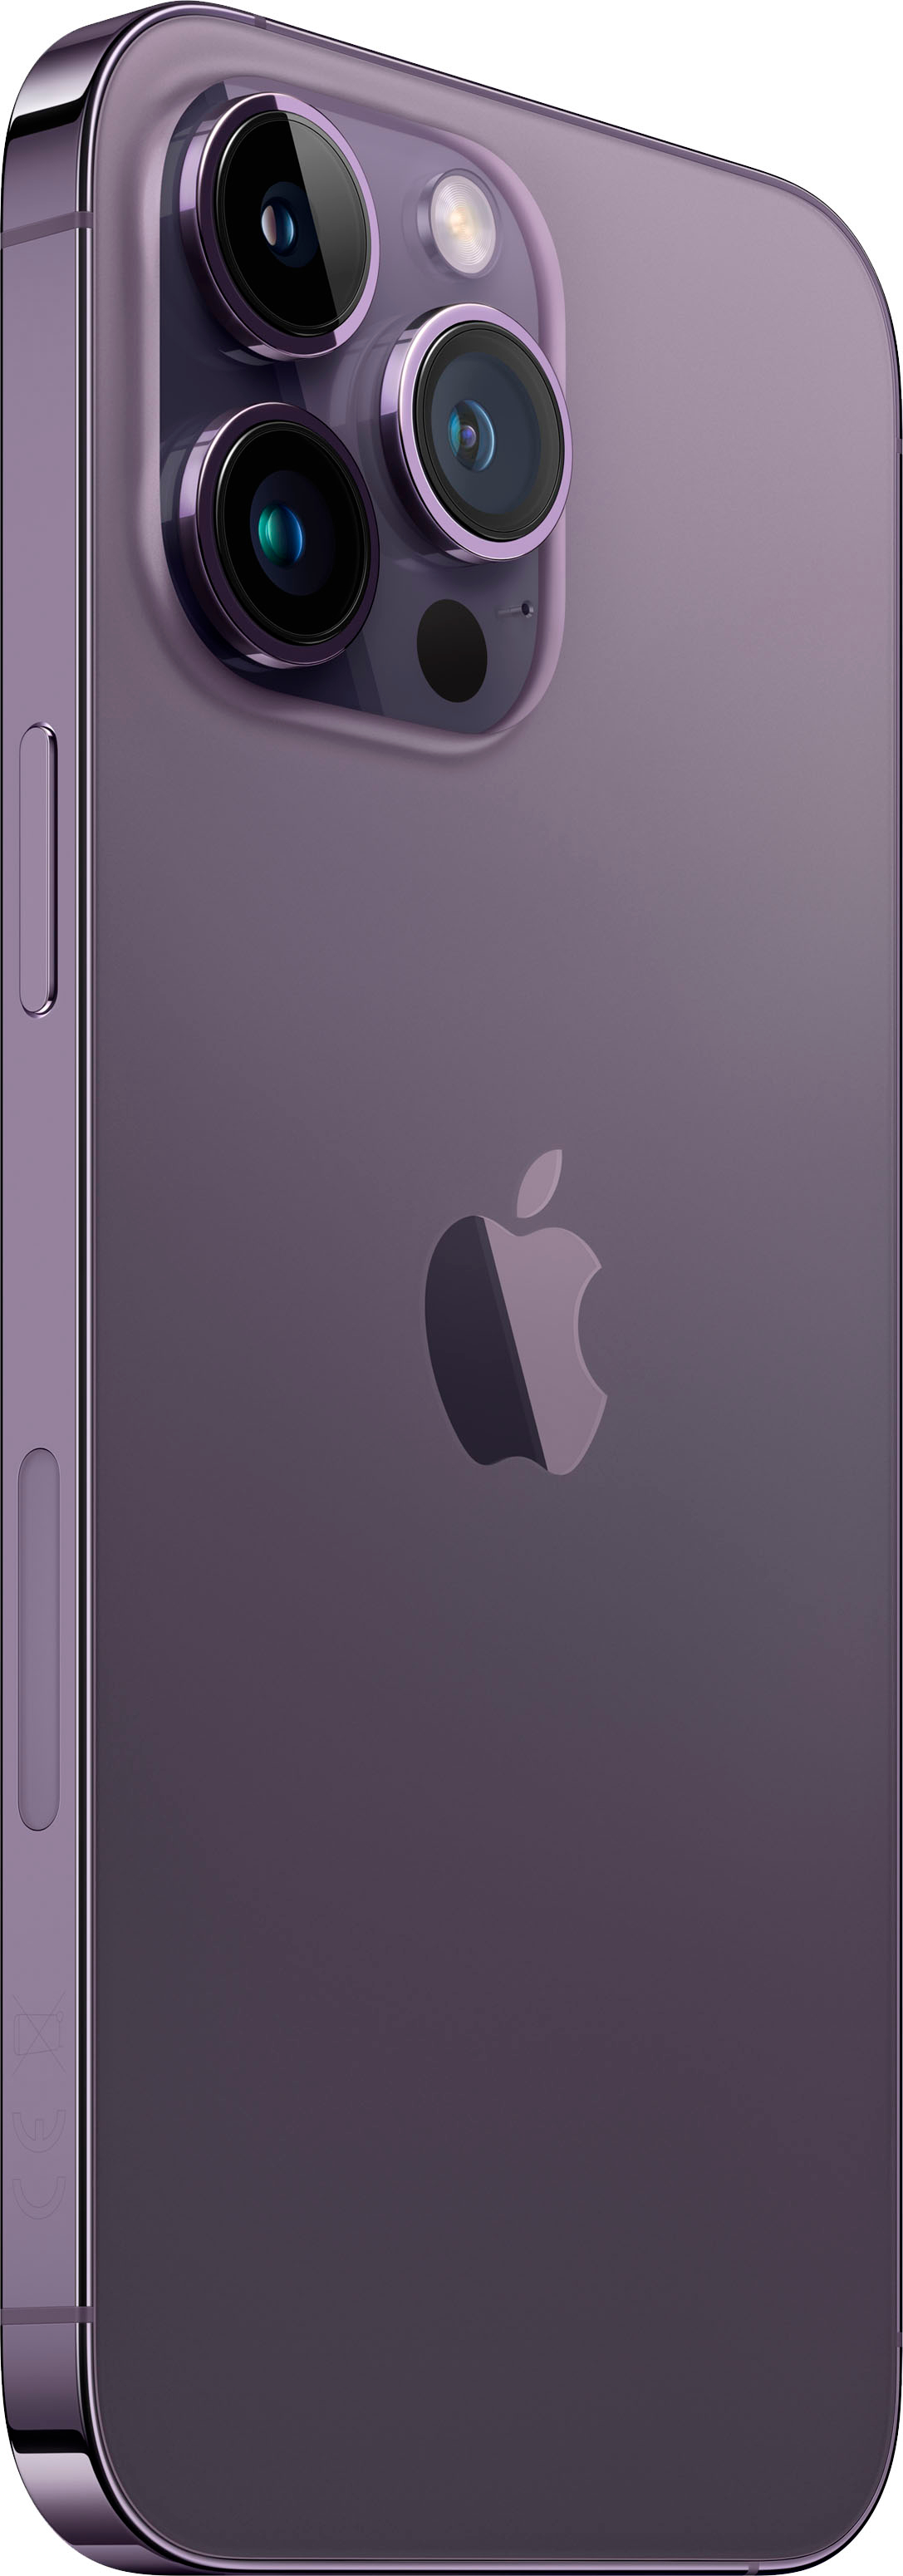 Apple iPhone 14 Pro Max 256GB Deep Purple (Verizon) MQ8W3LL/A 